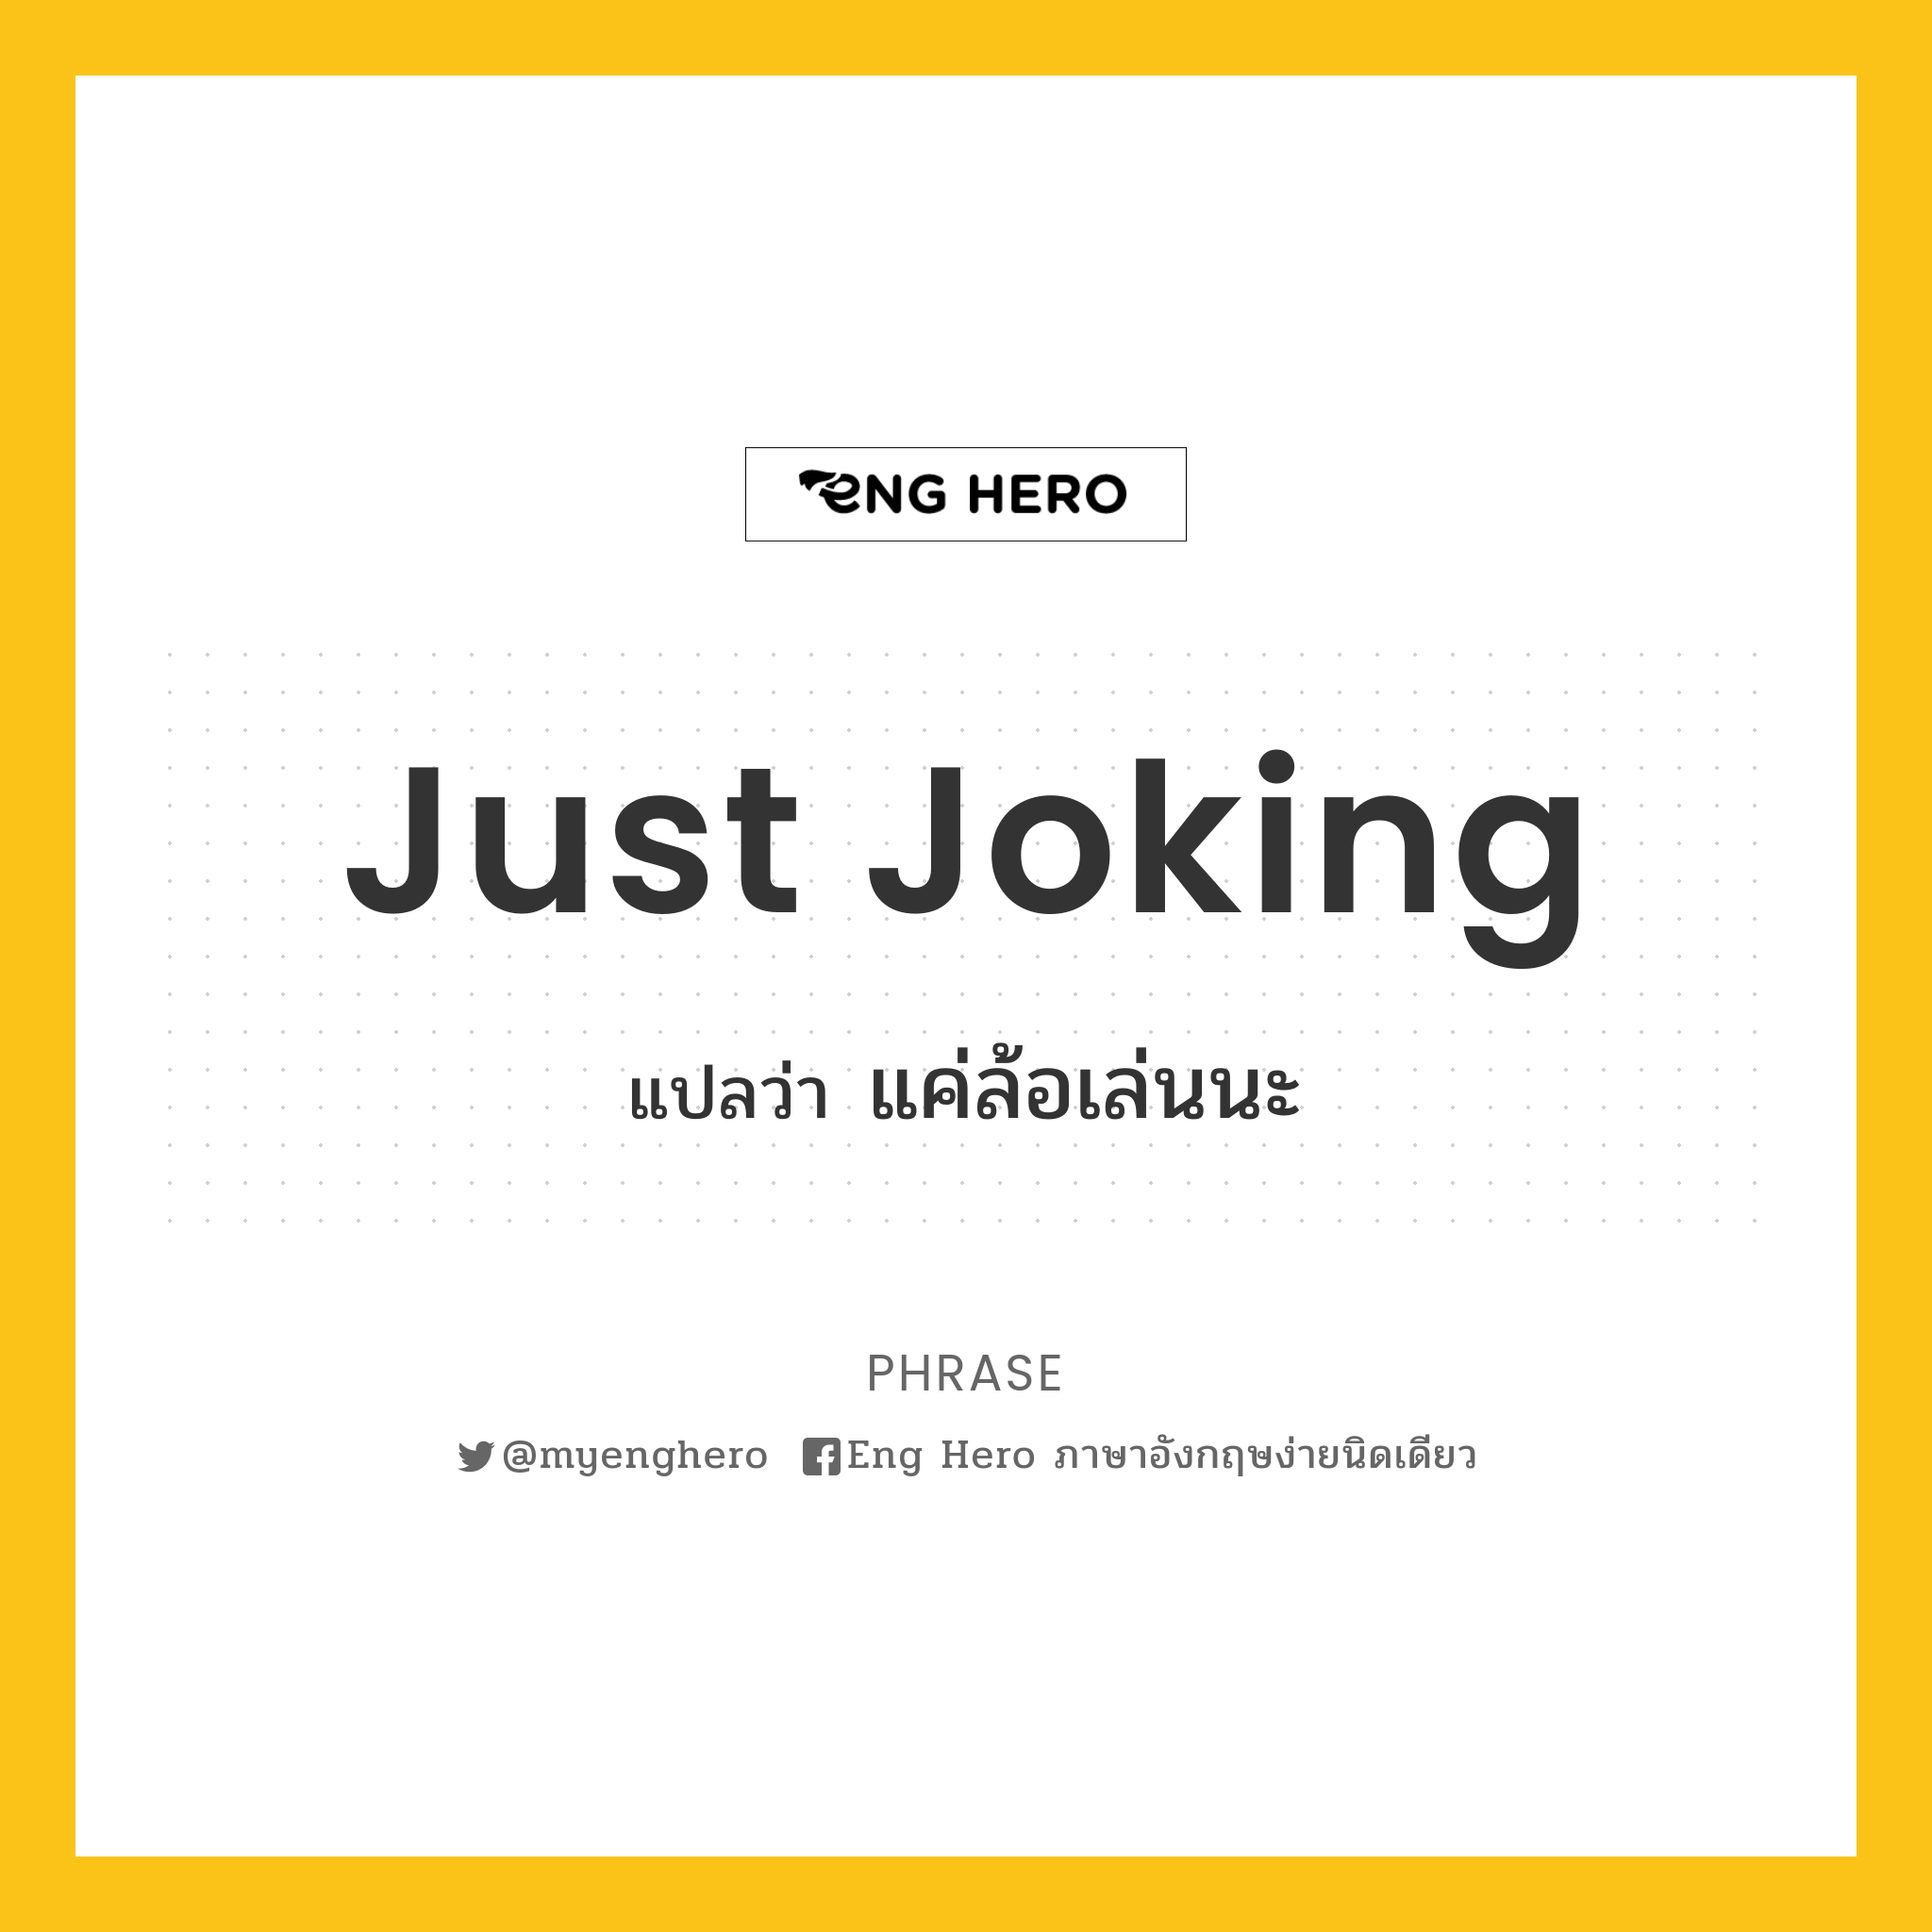 Just joking